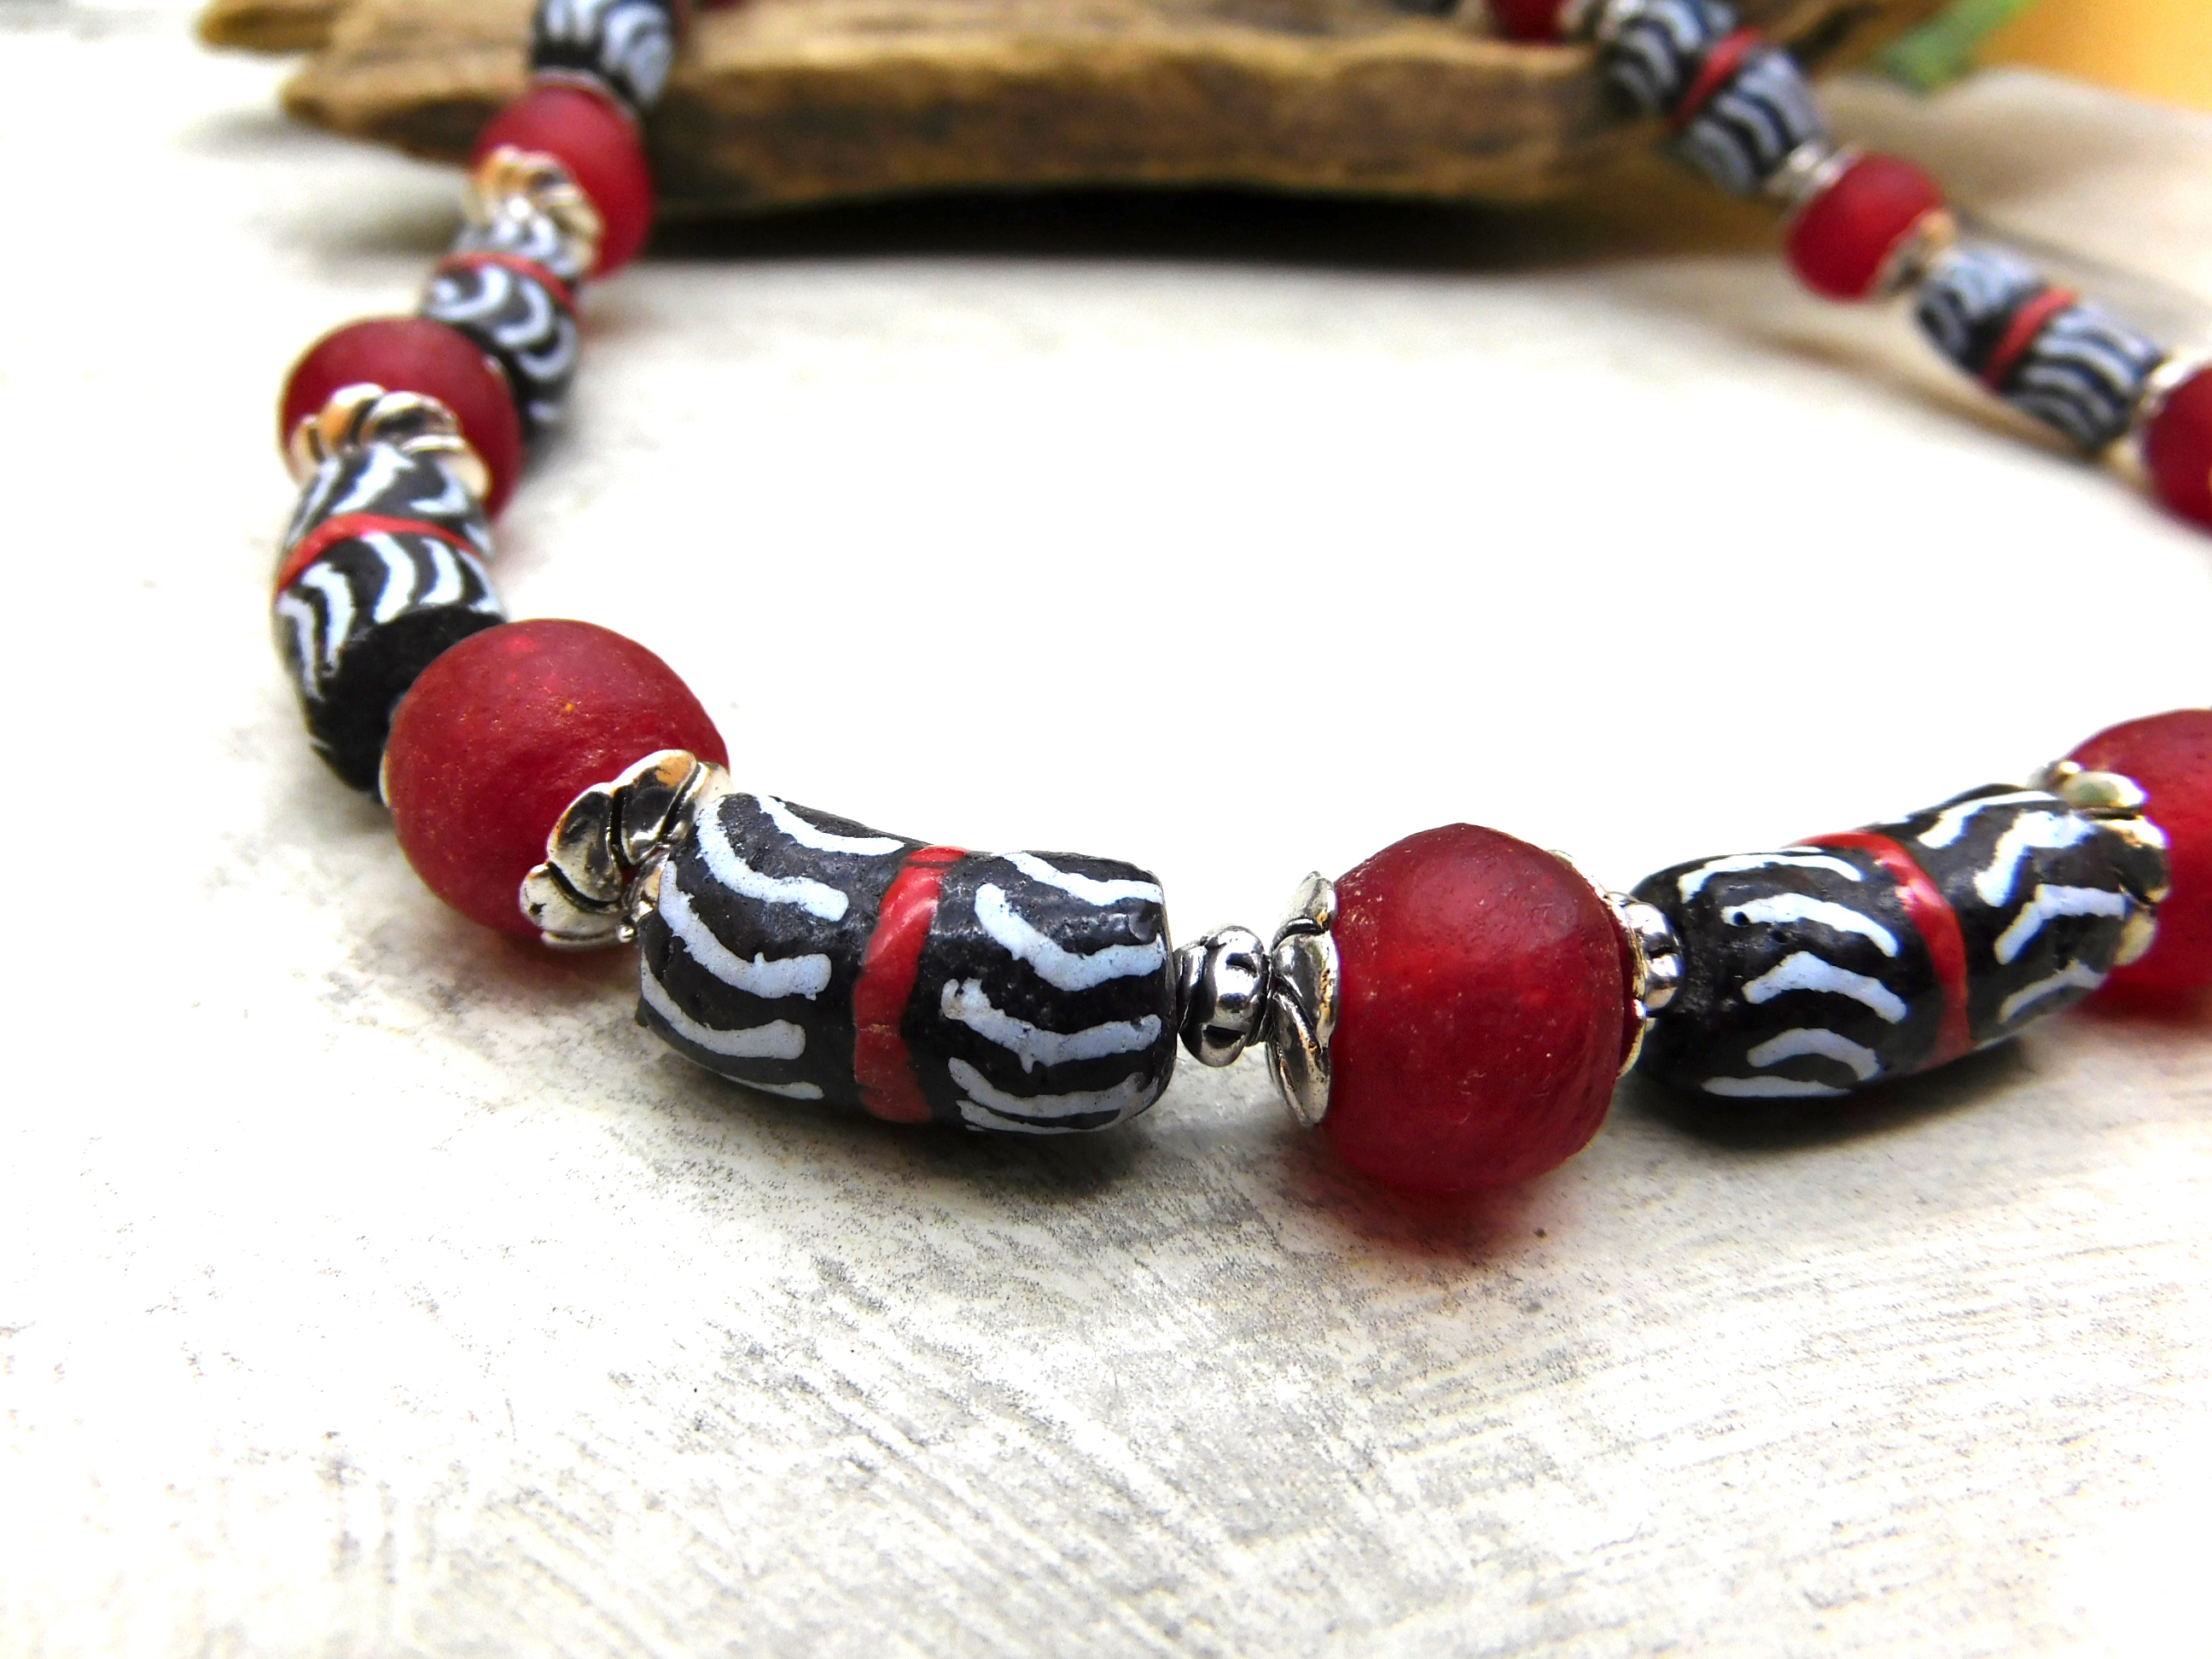 afrikanische Halskette mit Krobo-Recyclingglas in Schwarz und Rot